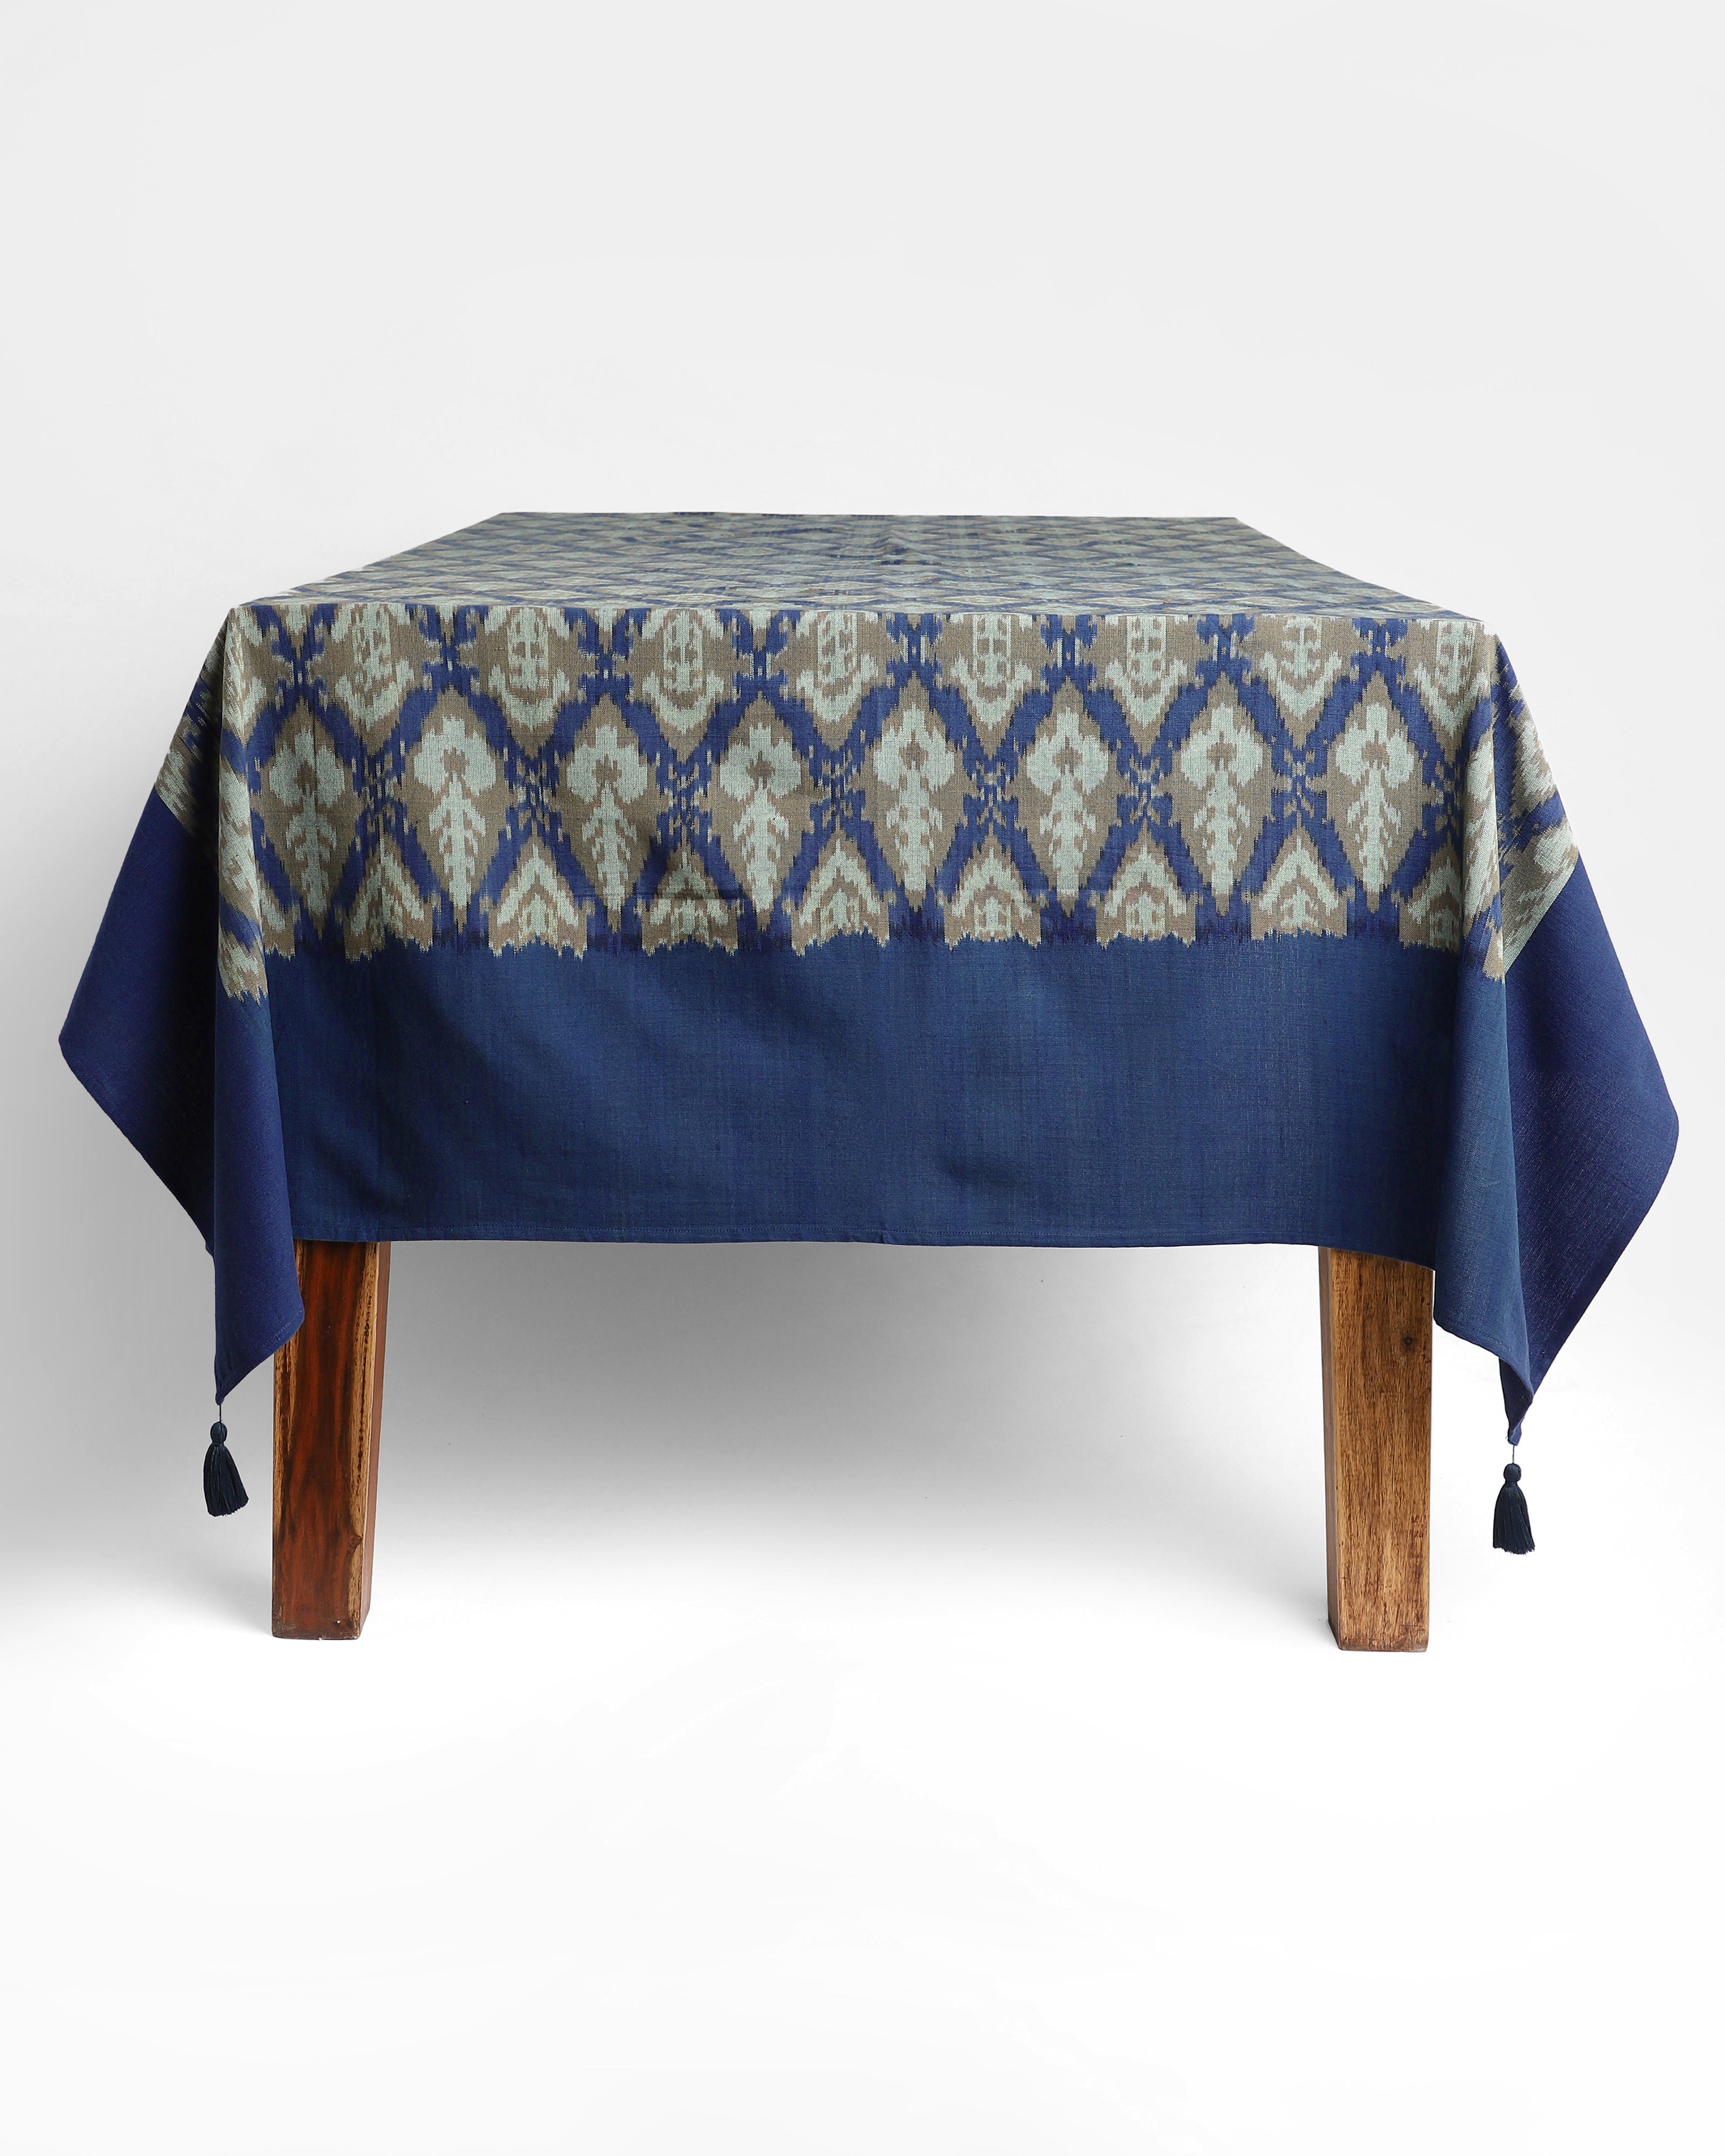 Udaya Warp Ikat Cotton Table Cover - Medium Assorted